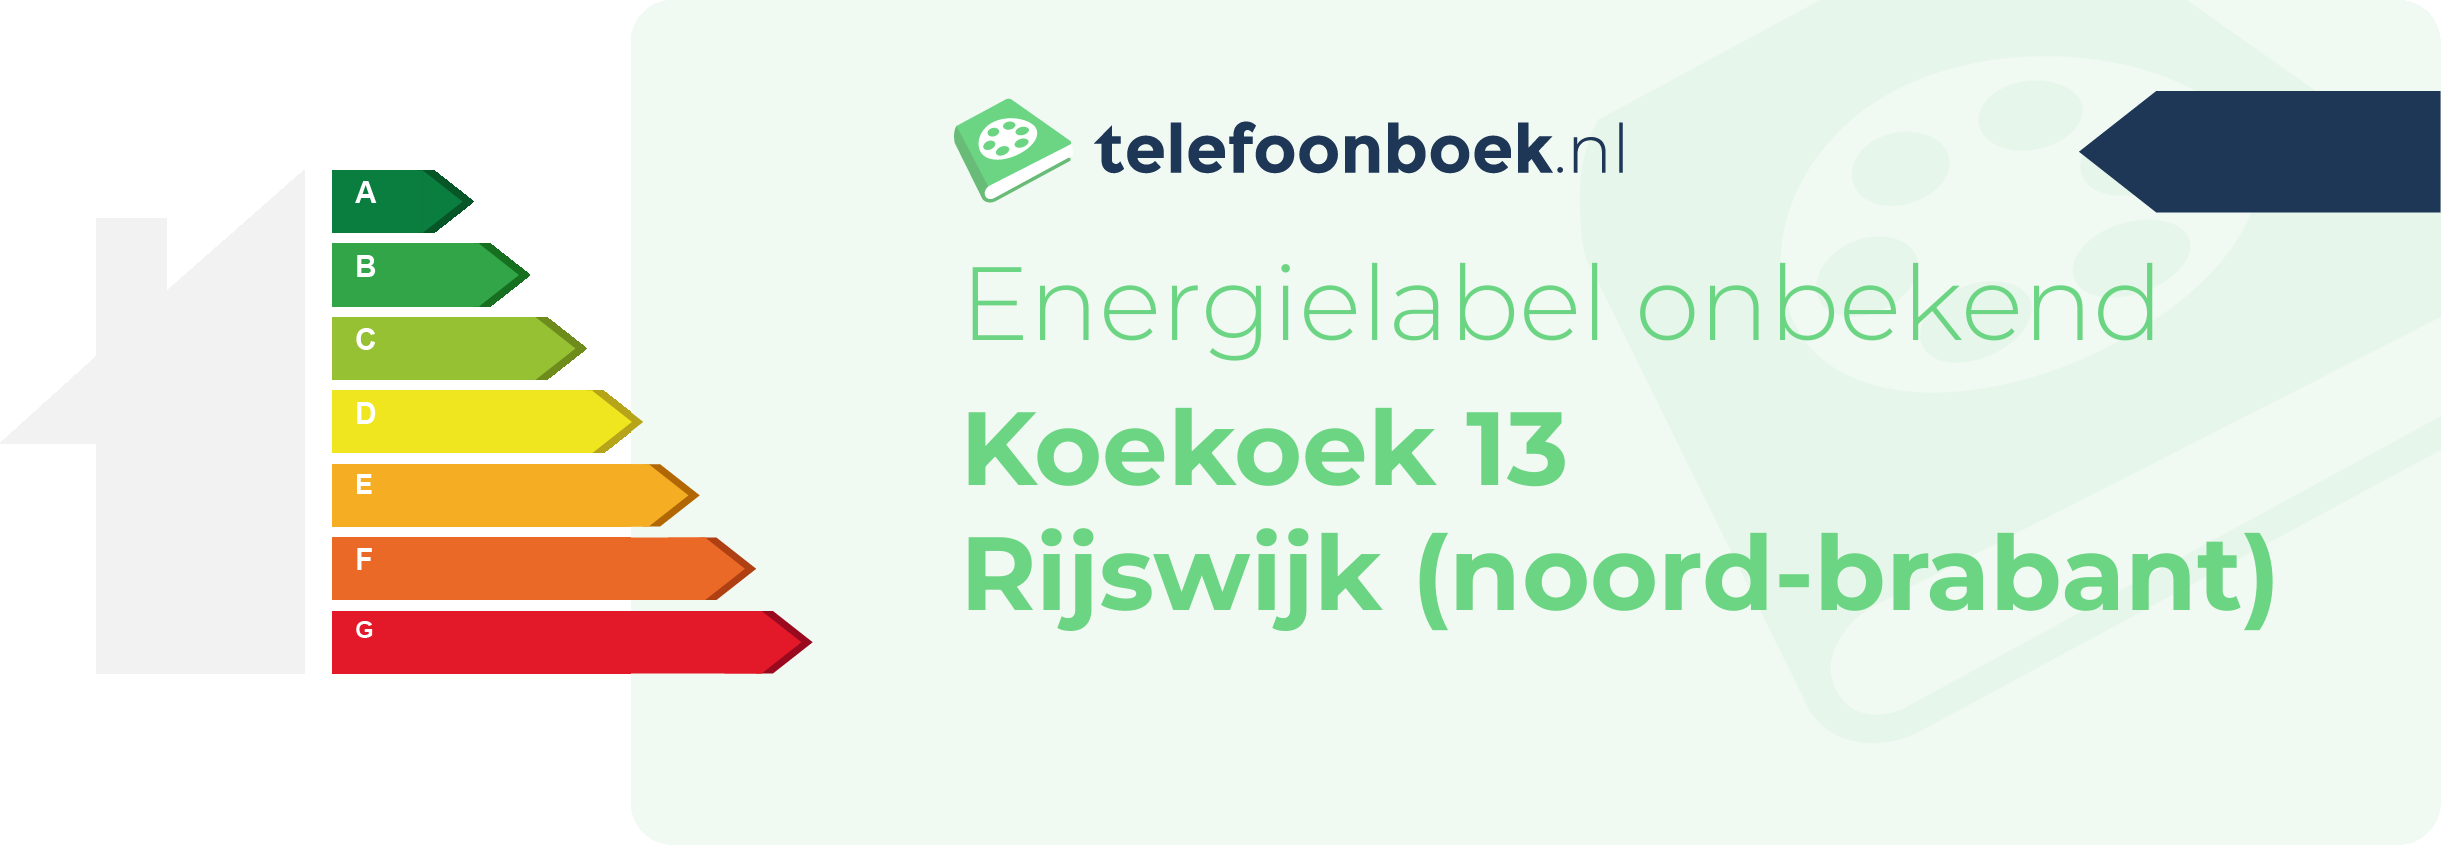 Energielabel Koekoek 13 Rijswijk (Noord-Brabant)